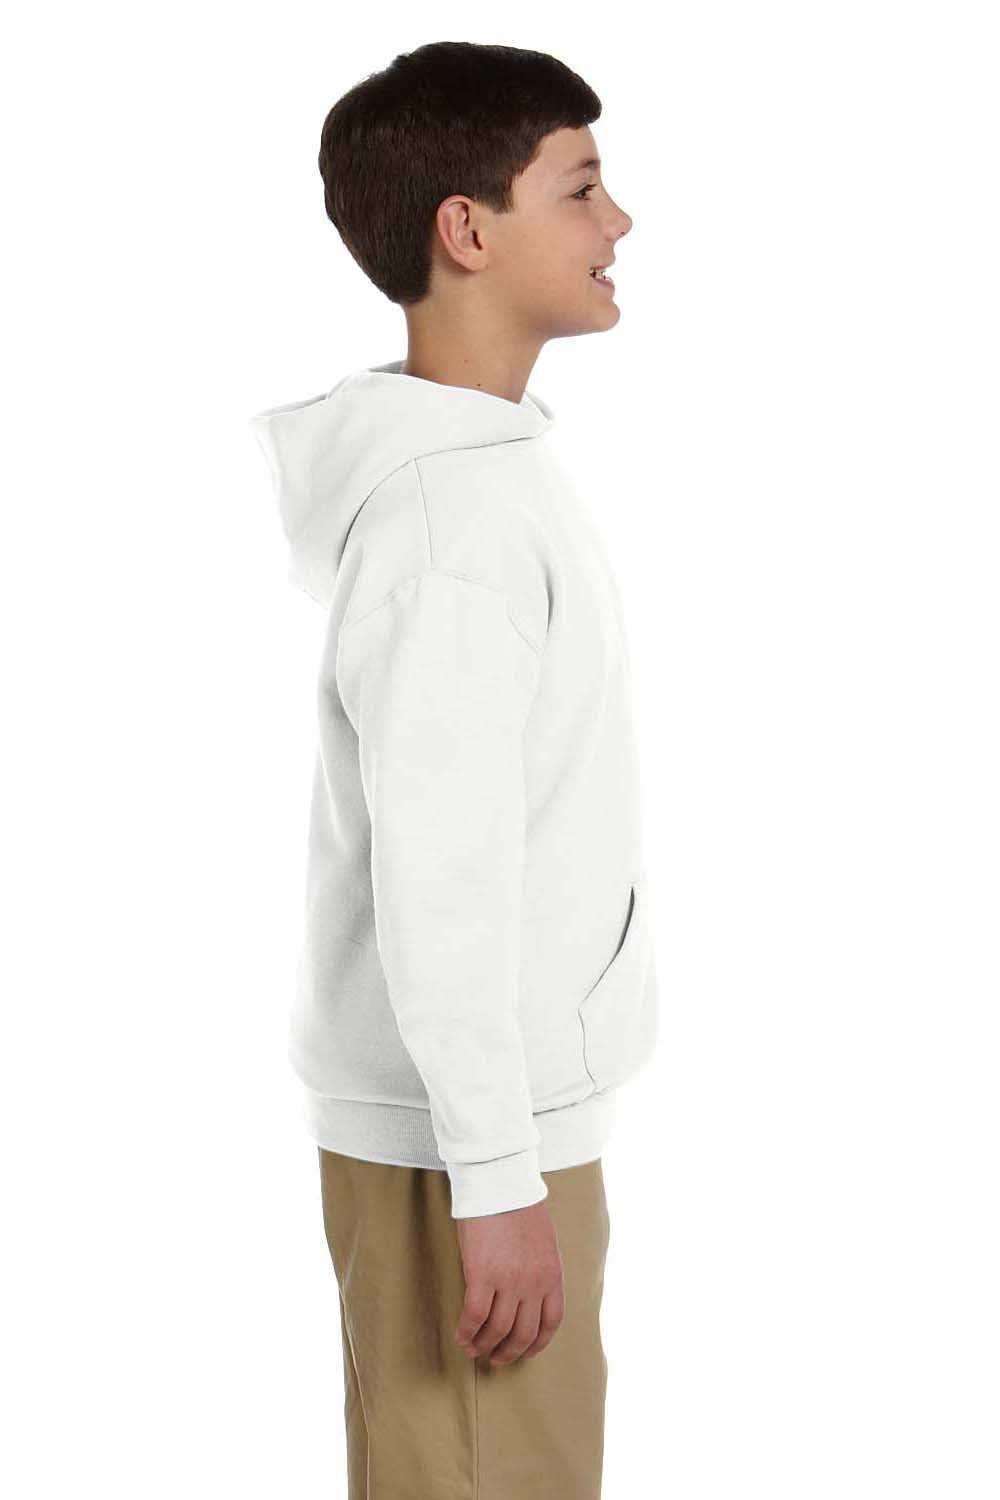 Jerzees 996Y Youth NuBlend Fleece Hooded Sweatshirt Hoodie White Side